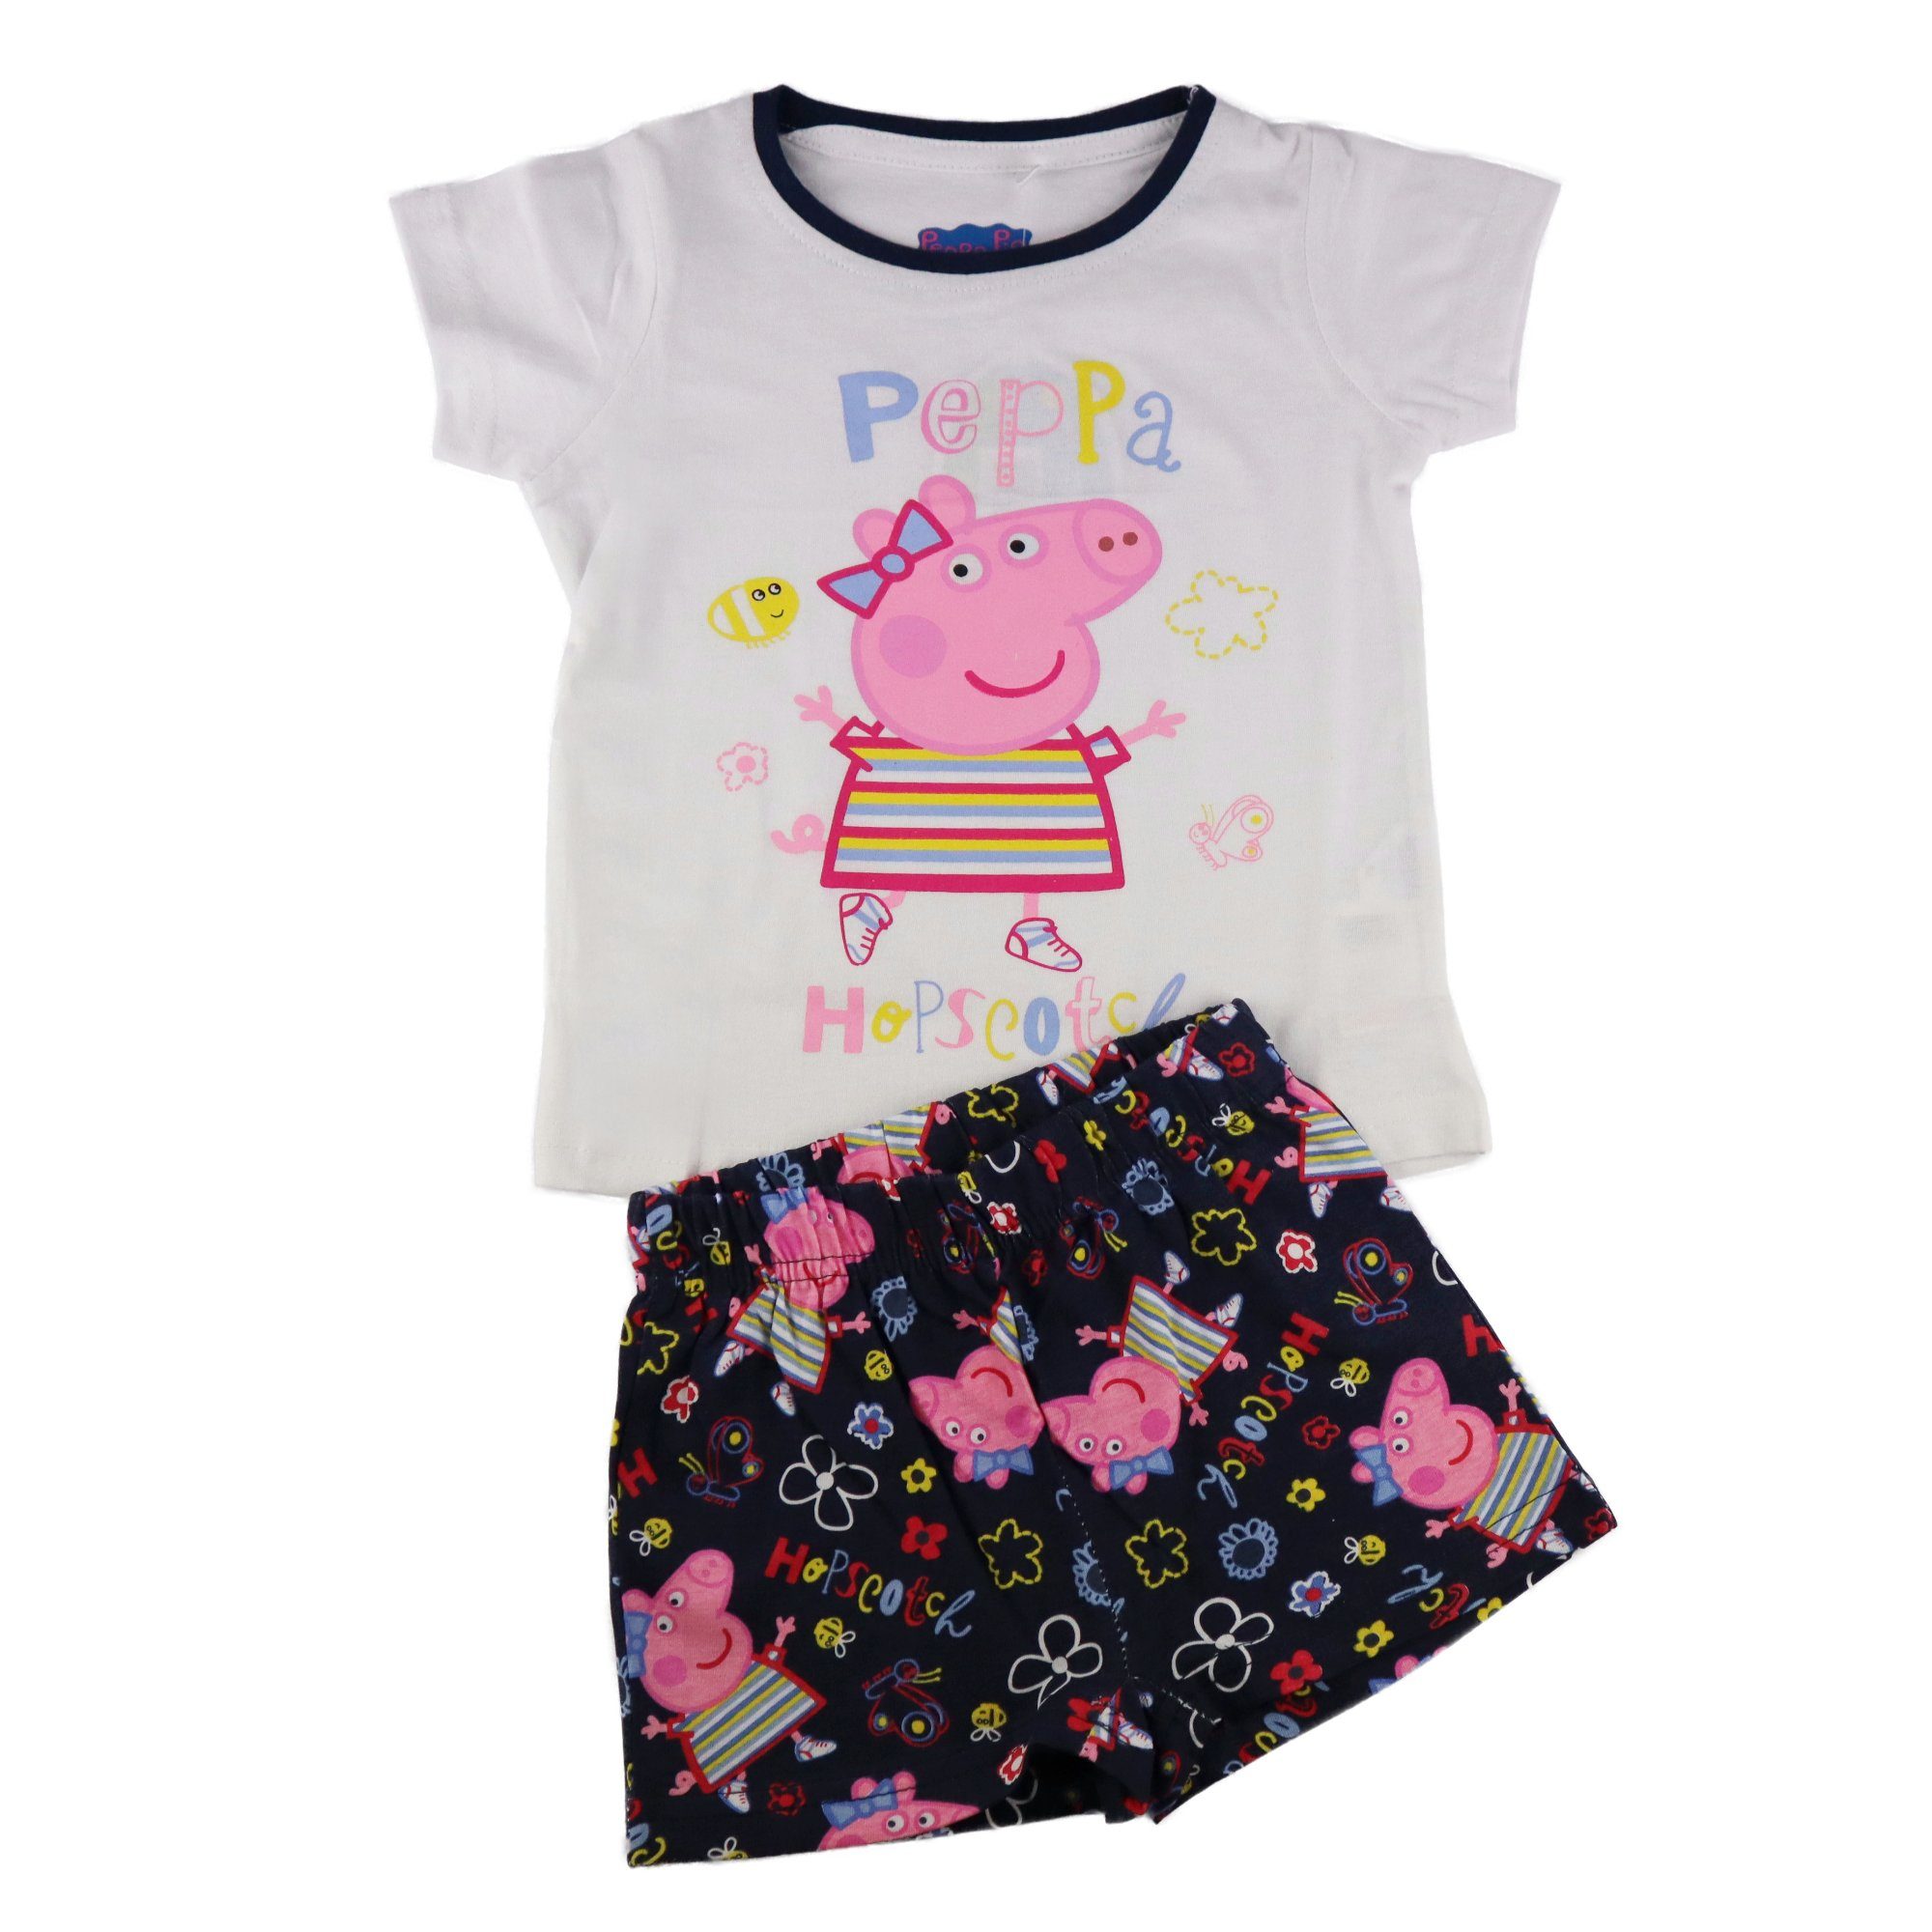 Peppa Pig Schlafanzug »Peppa Wutz Kinder Mädchen Pyjama« Gr. 92 bis 116,  Grau oder Weiß